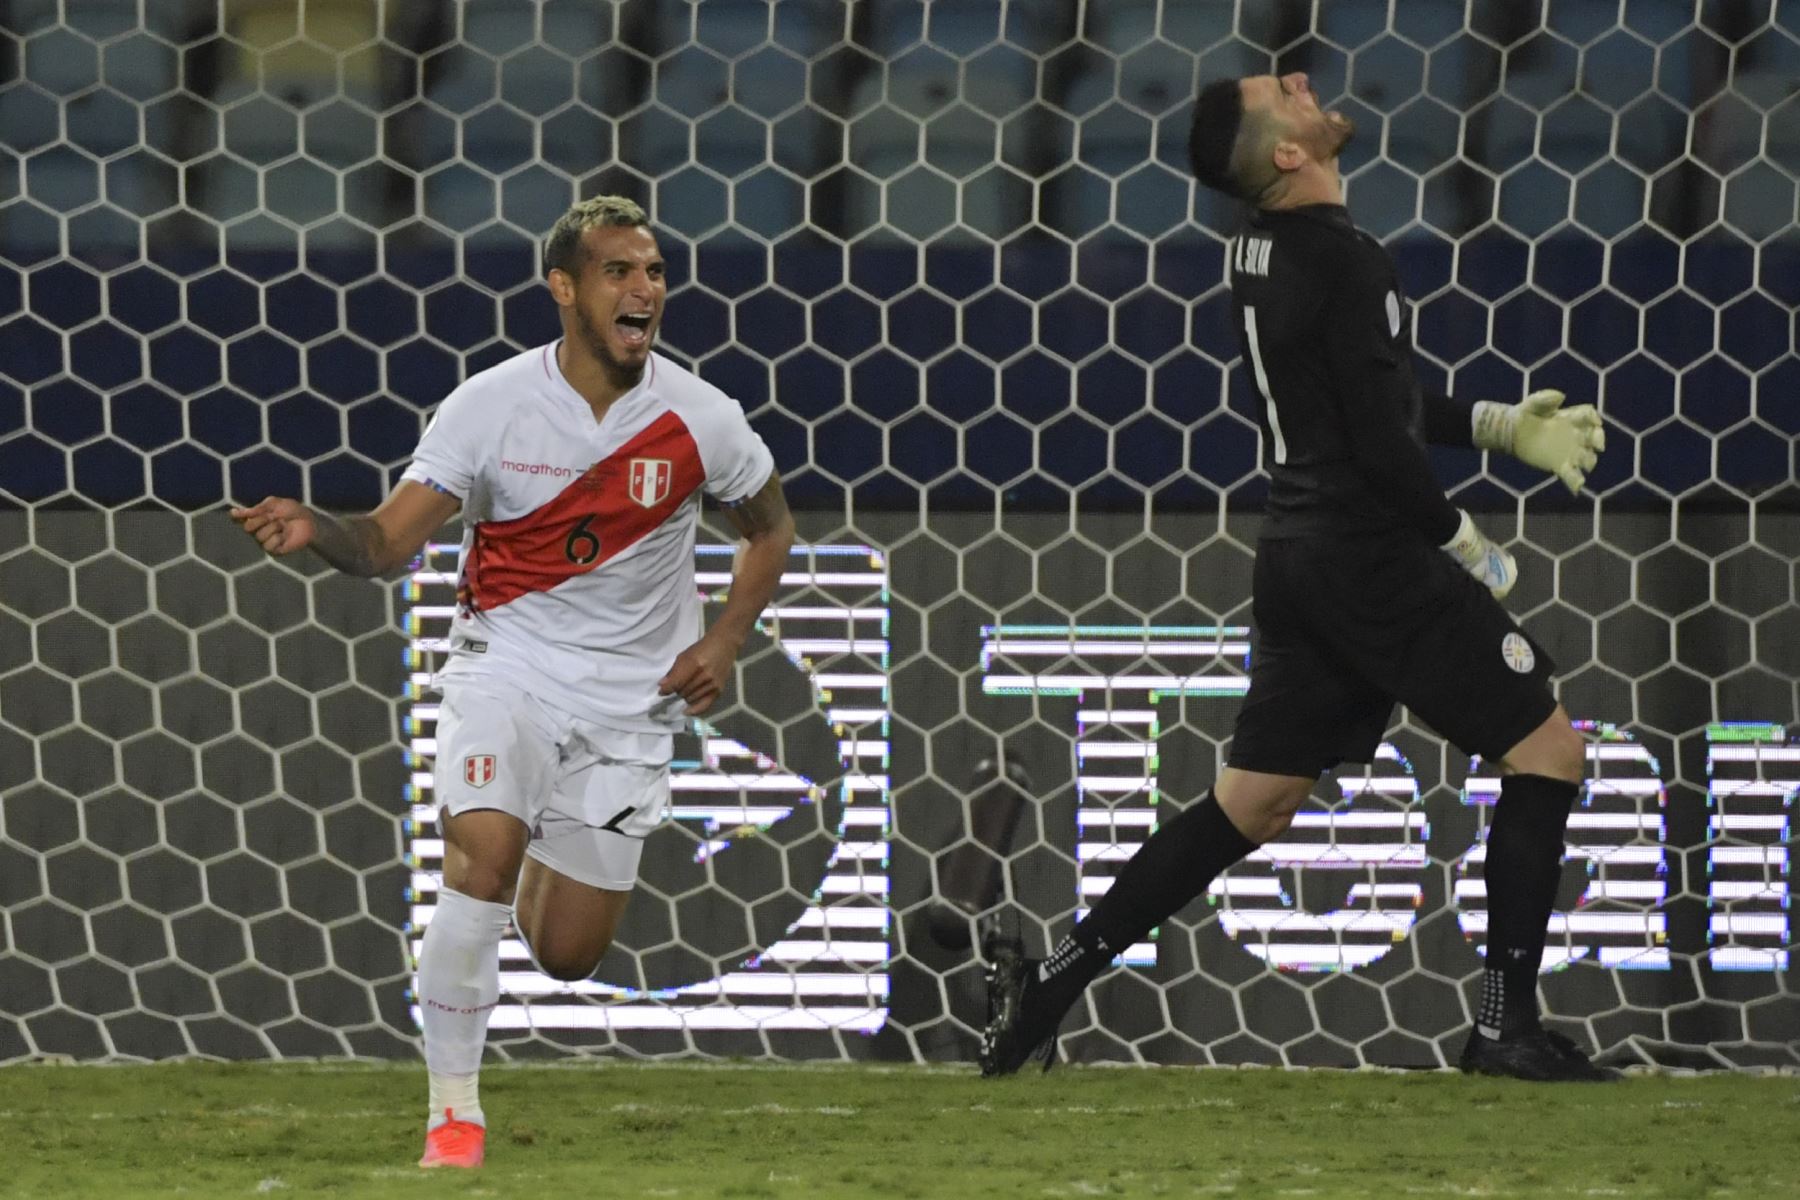 El peruano Miguel Trauco celebra tras anotar el gol definitivo durante la tanda de penaltis contra Paraguay por los cuartos de final de la Copa América 2021, en el Estadio Olímpico de Goiania, Brasil. Foto: AFP